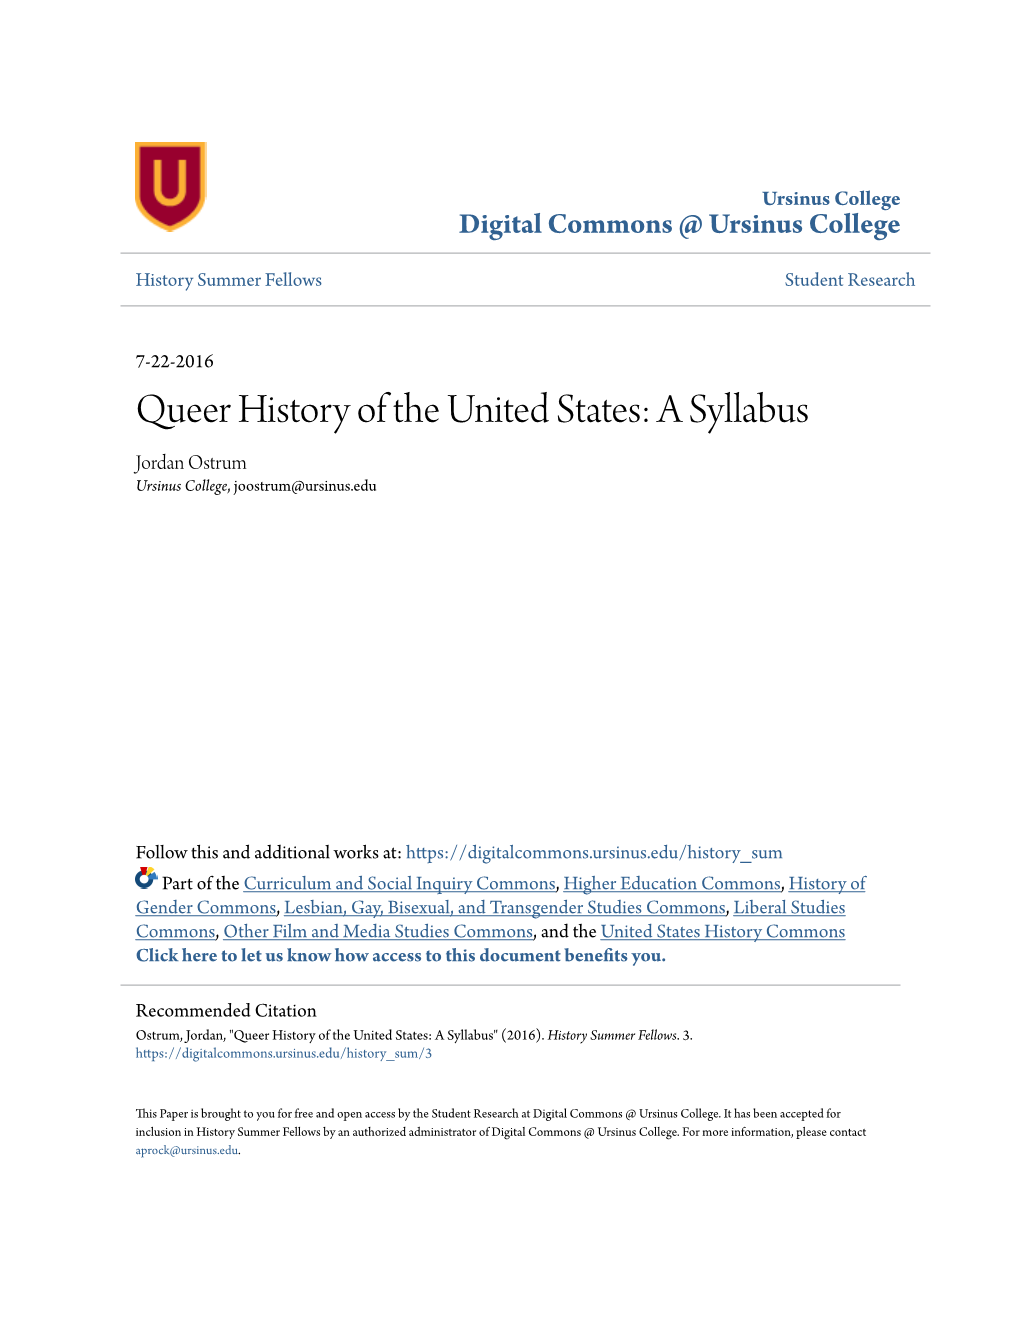 Queer History of the United States: a Syllabus Jordan Ostrum Ursinus College, Joostrum@Ursinus.Edu